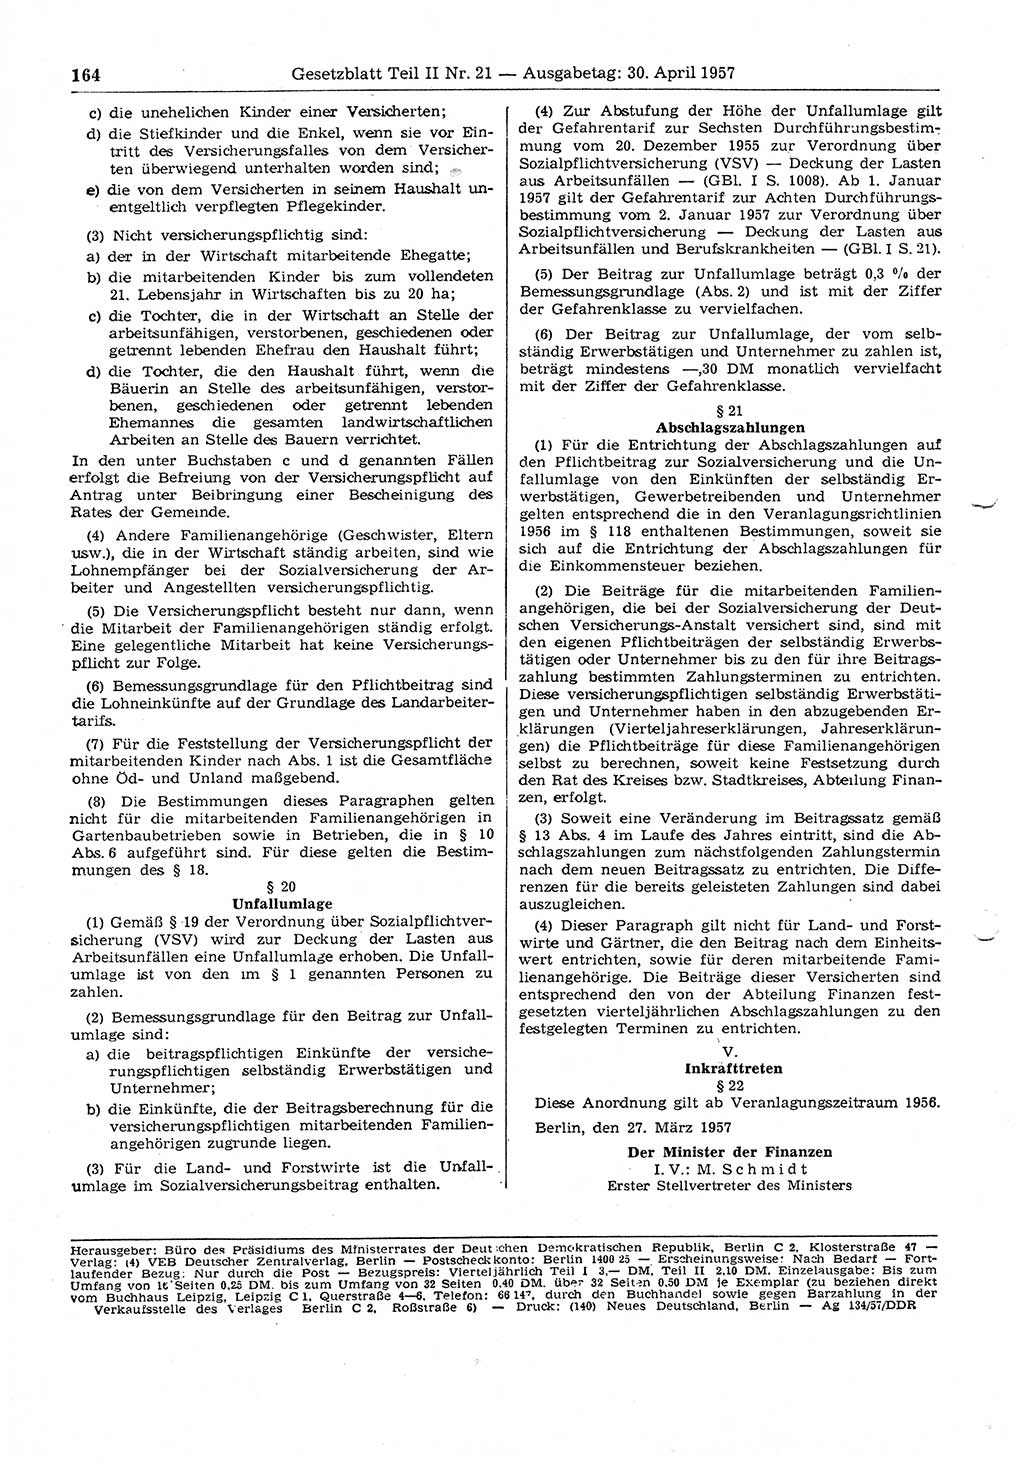 Gesetzblatt (GBl.) der Deutschen Demokratischen Republik (DDR) Teil ⅠⅠ 1957, Seite 164 (GBl. DDR ⅠⅠ 1957, S. 164)